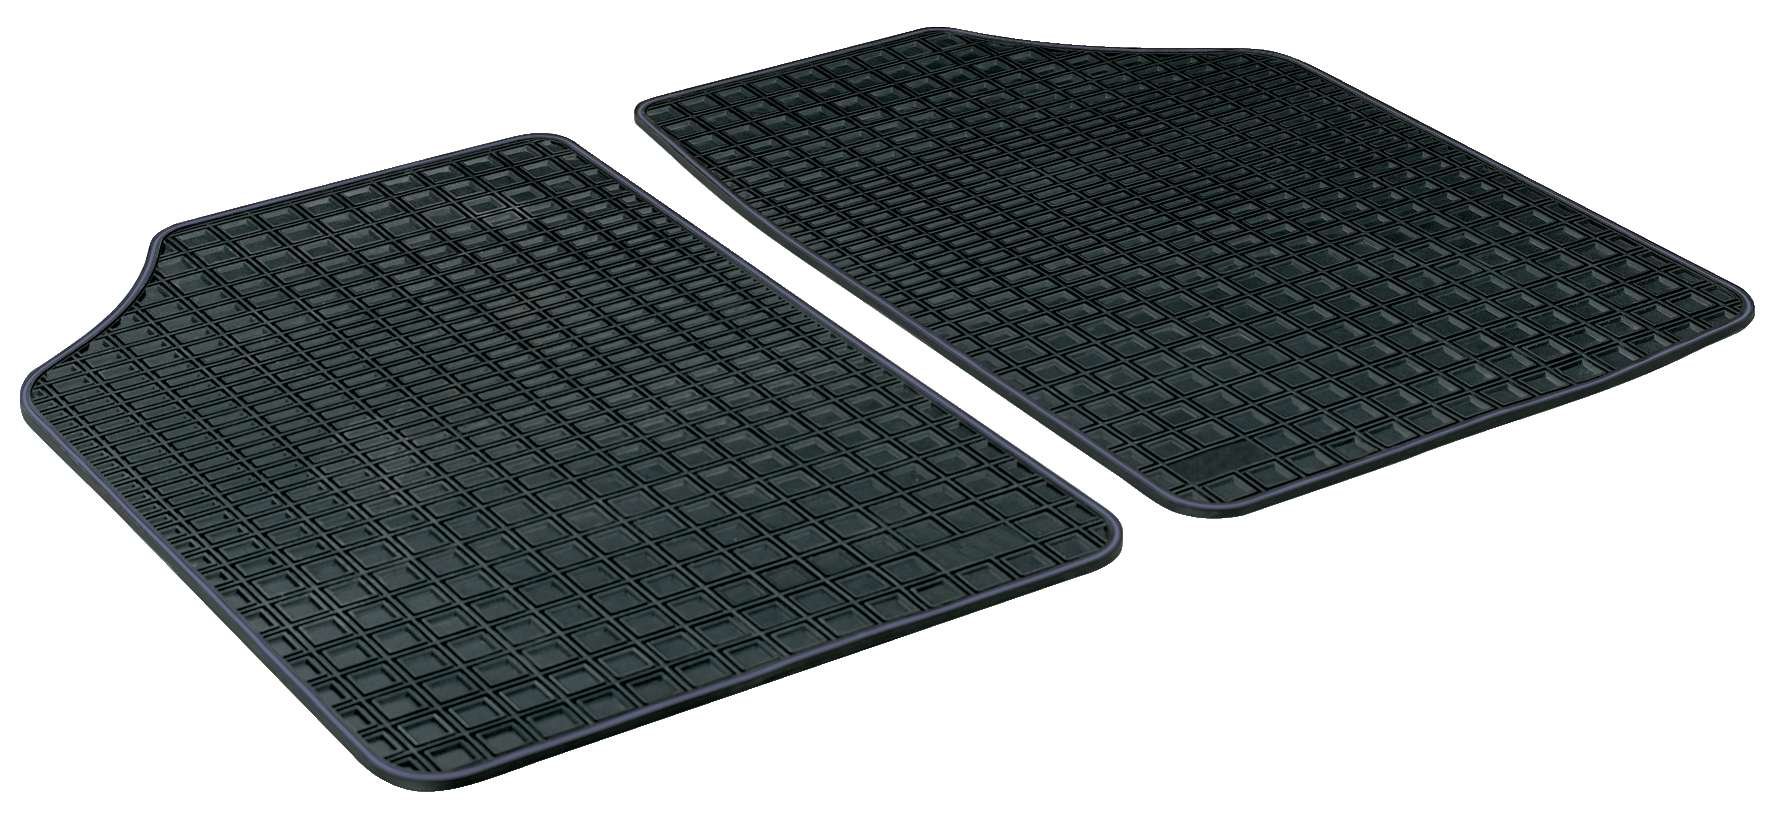 Rubber mats for Blueline Premium size 2